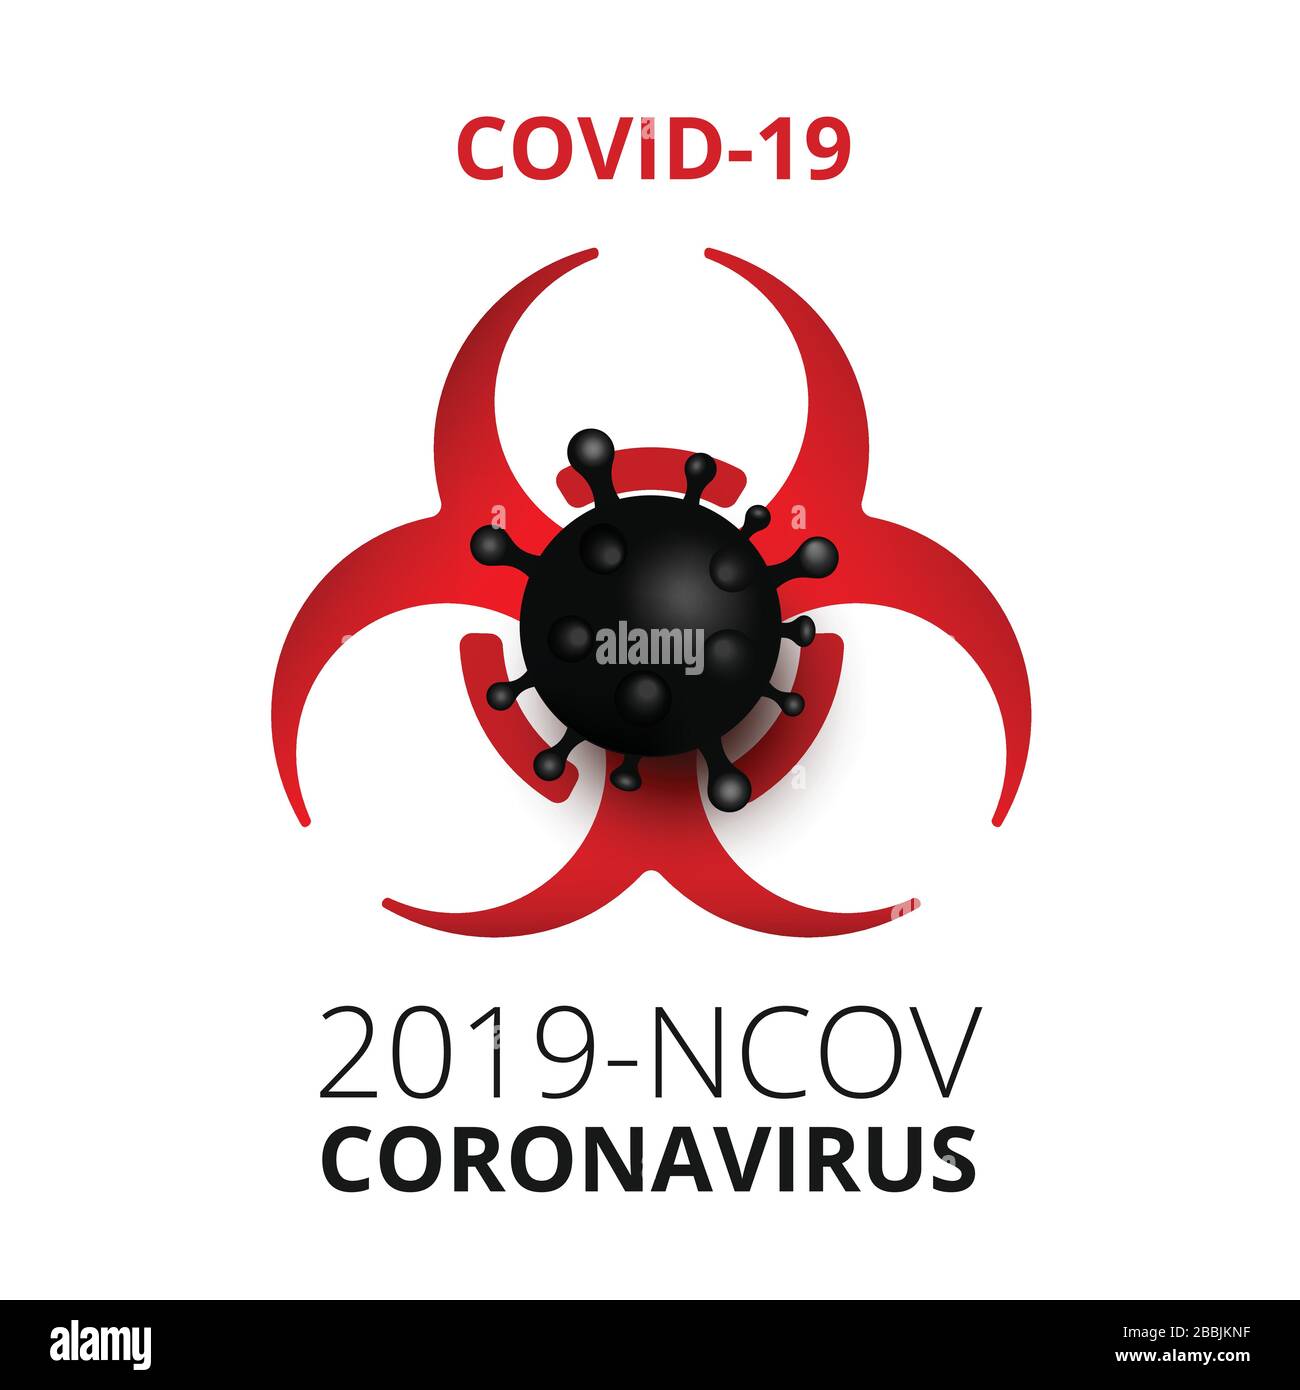 Illustrations simples Infographie Coronavirus COVID-19. Virus respiratoire pathogène Wuhan de Chine. Virus dangereux, illustration vectorielle. Illustration de Vecteur